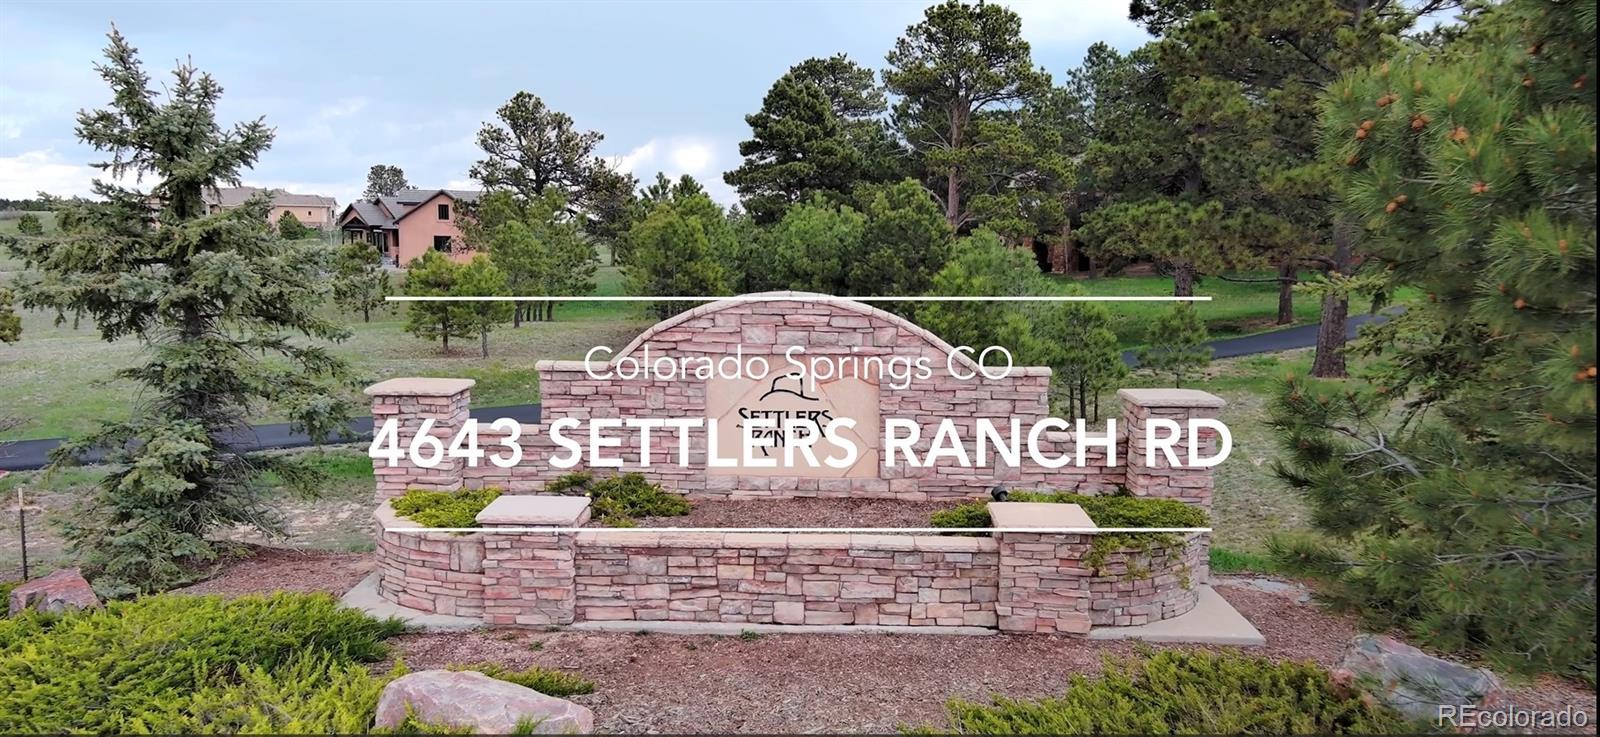 MLS Image #22 for 4643  settlers ranch road,colorado springs, Colorado